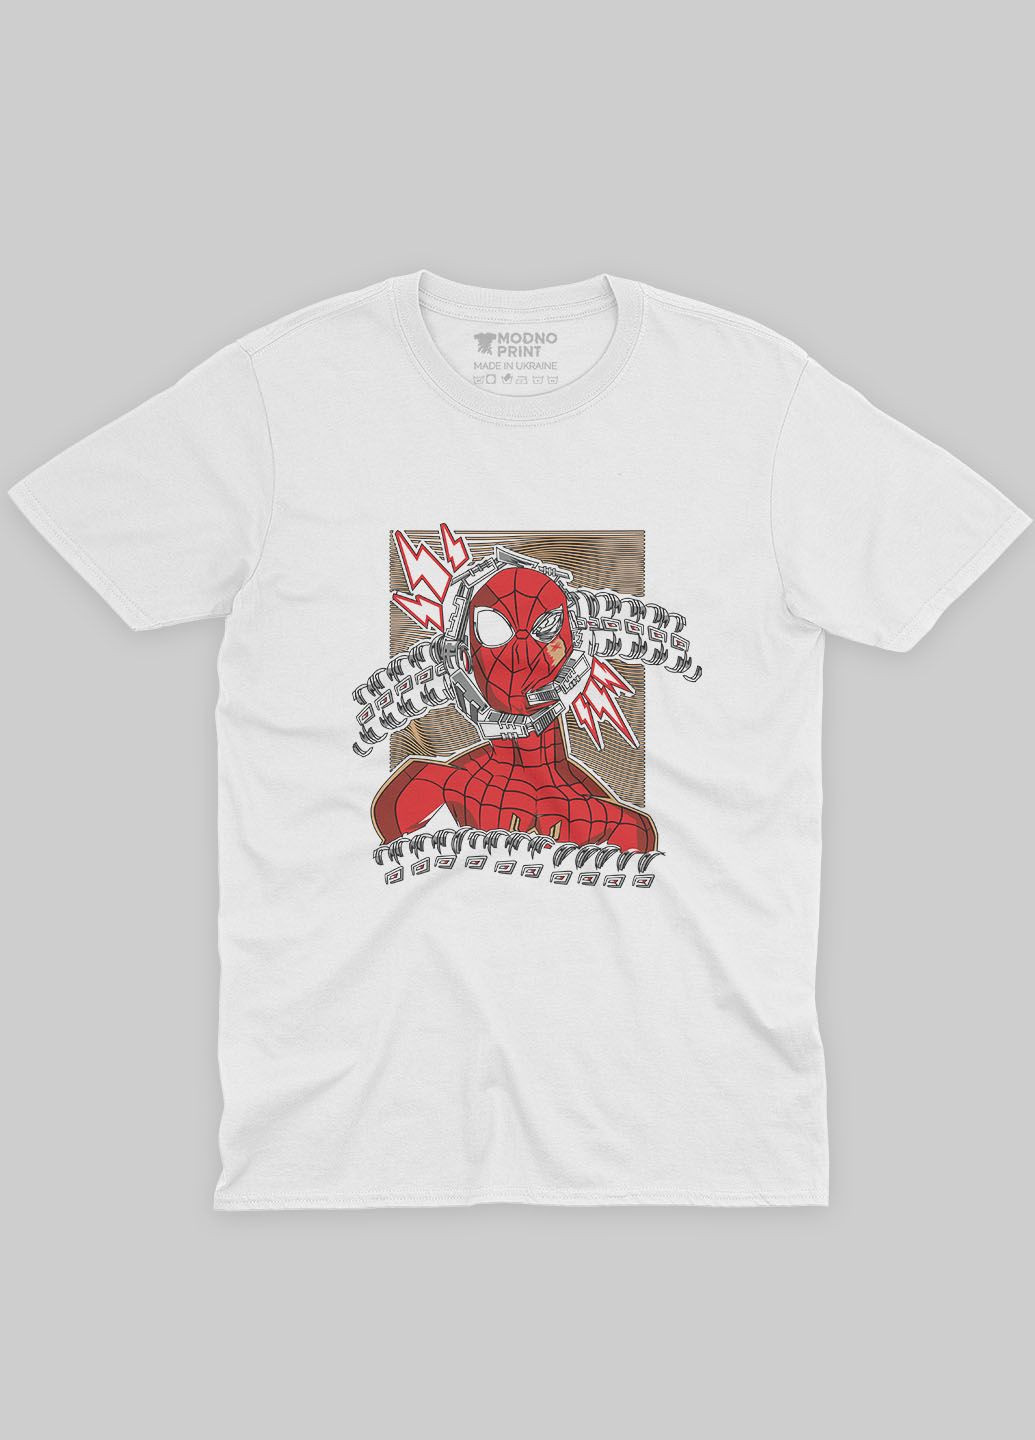 Біла демісезонна футболка для хлопчика з принтом супергероя - людина-павук (ts001-1-whi-006-014-013-b) Modno